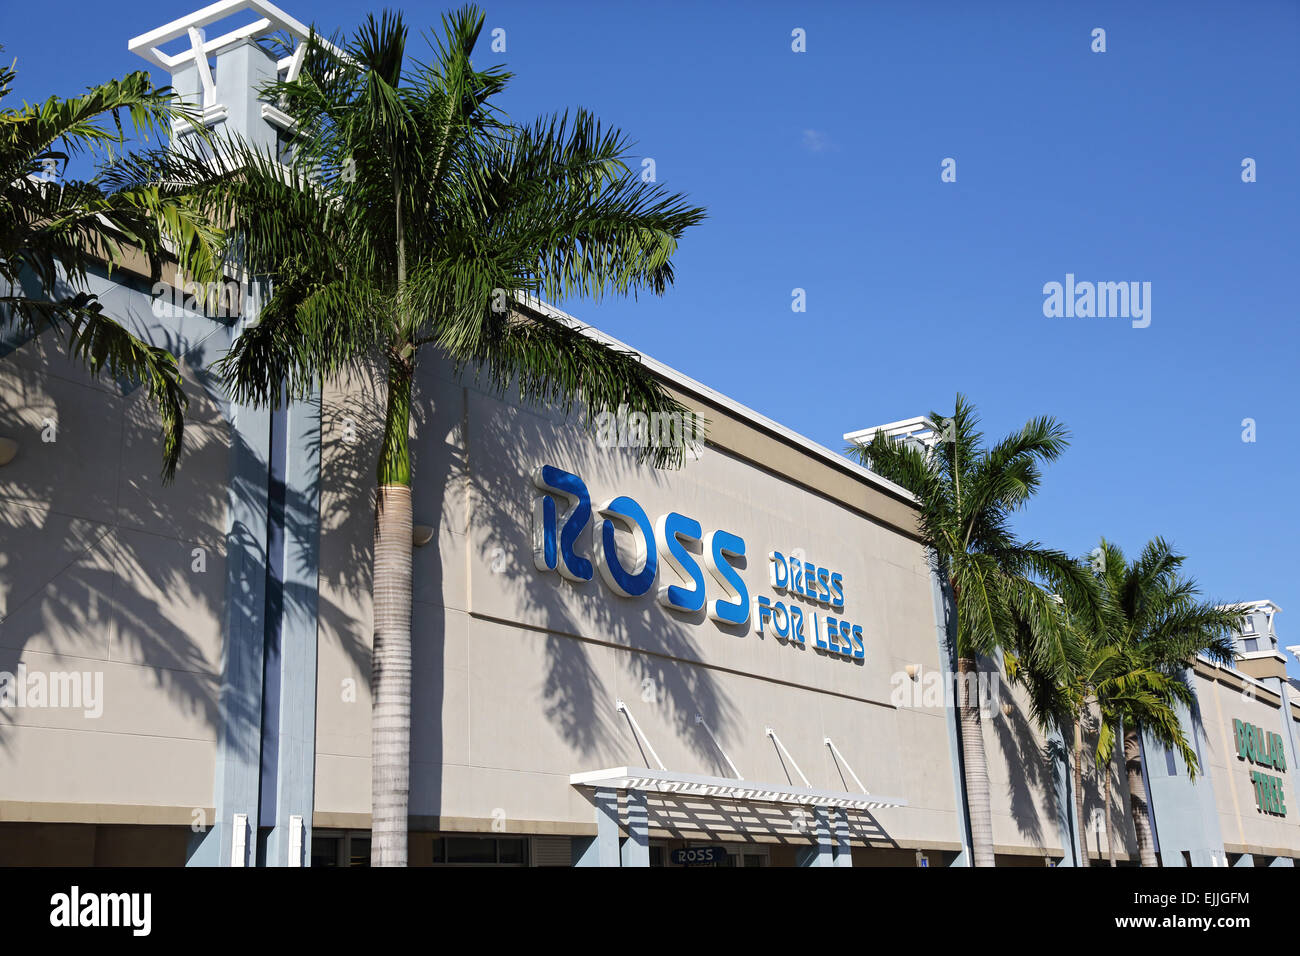 Ross abito per meno store sign & negozio di fronte a Fort Lauderdale, Florida, Stati Uniti d'America Foto Stock